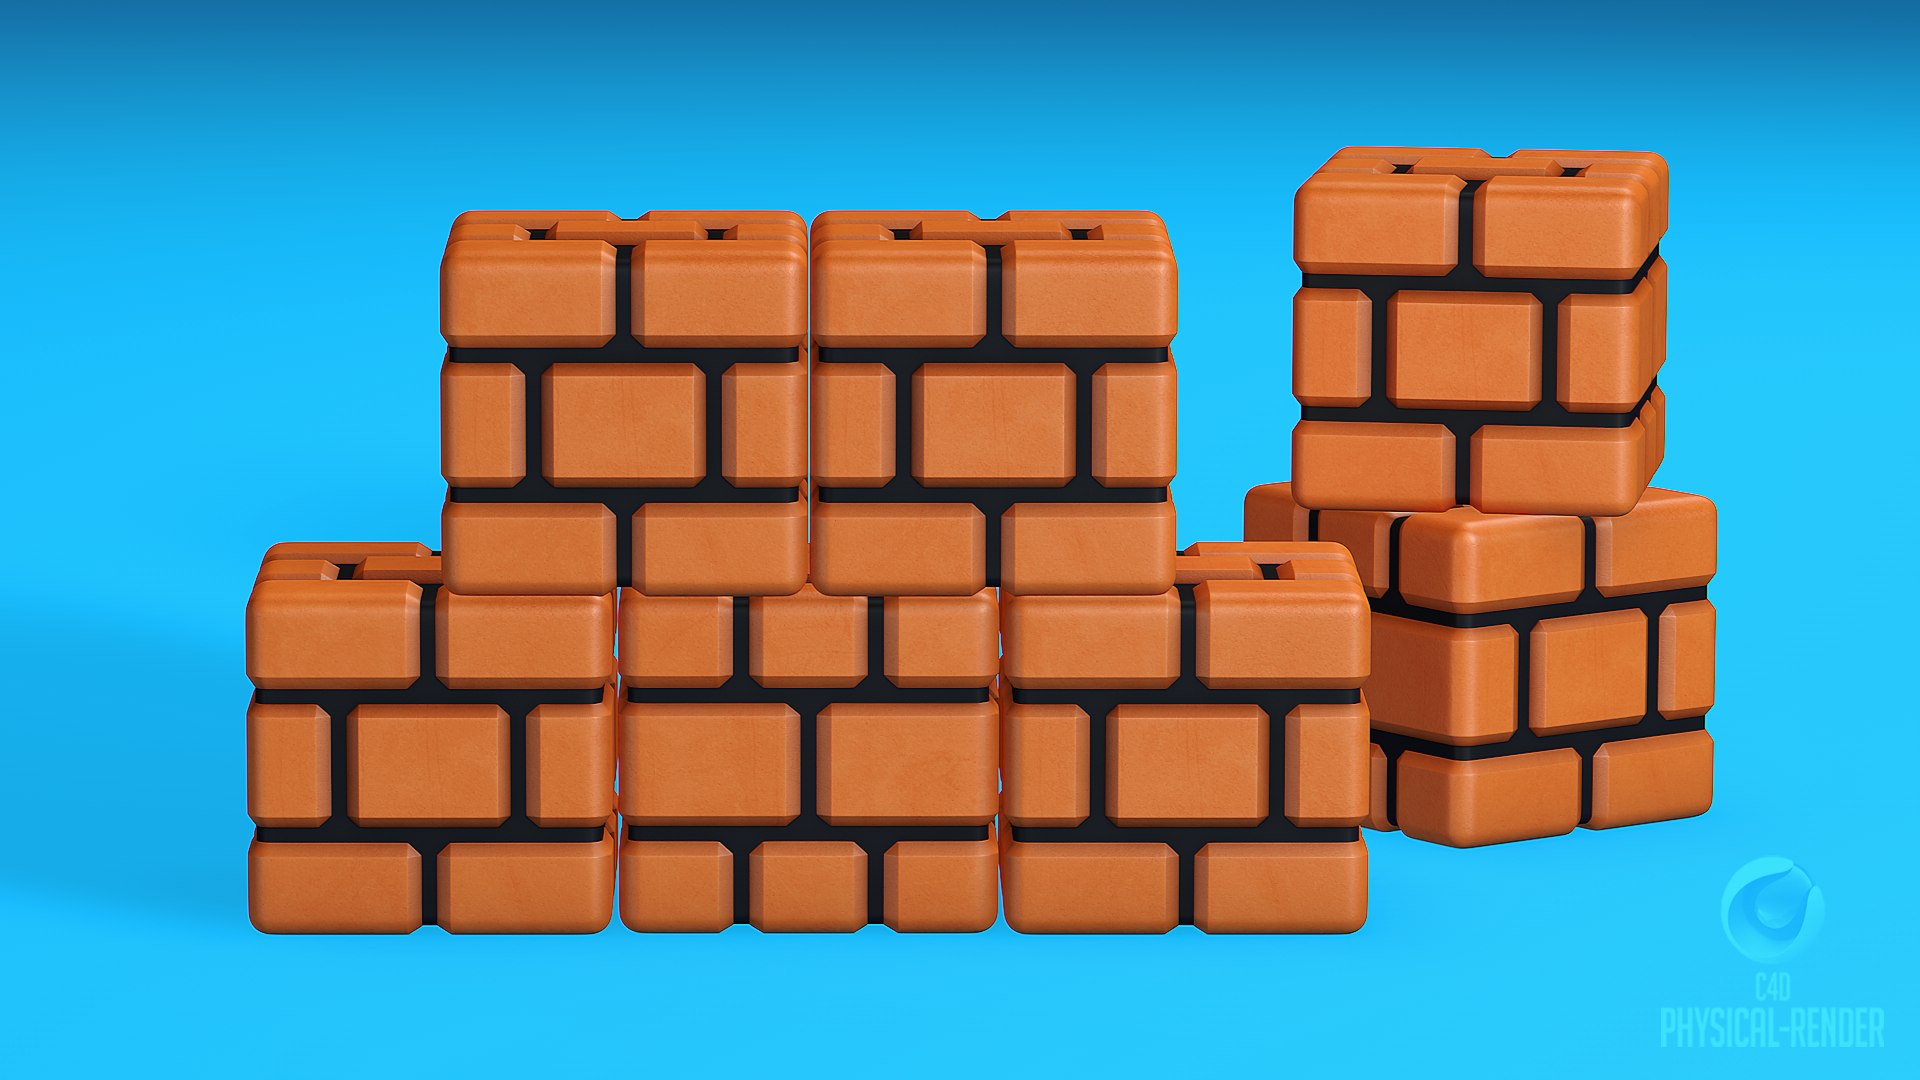 3D Super Mario Bros Brick Block model - TurboSquid 2064017